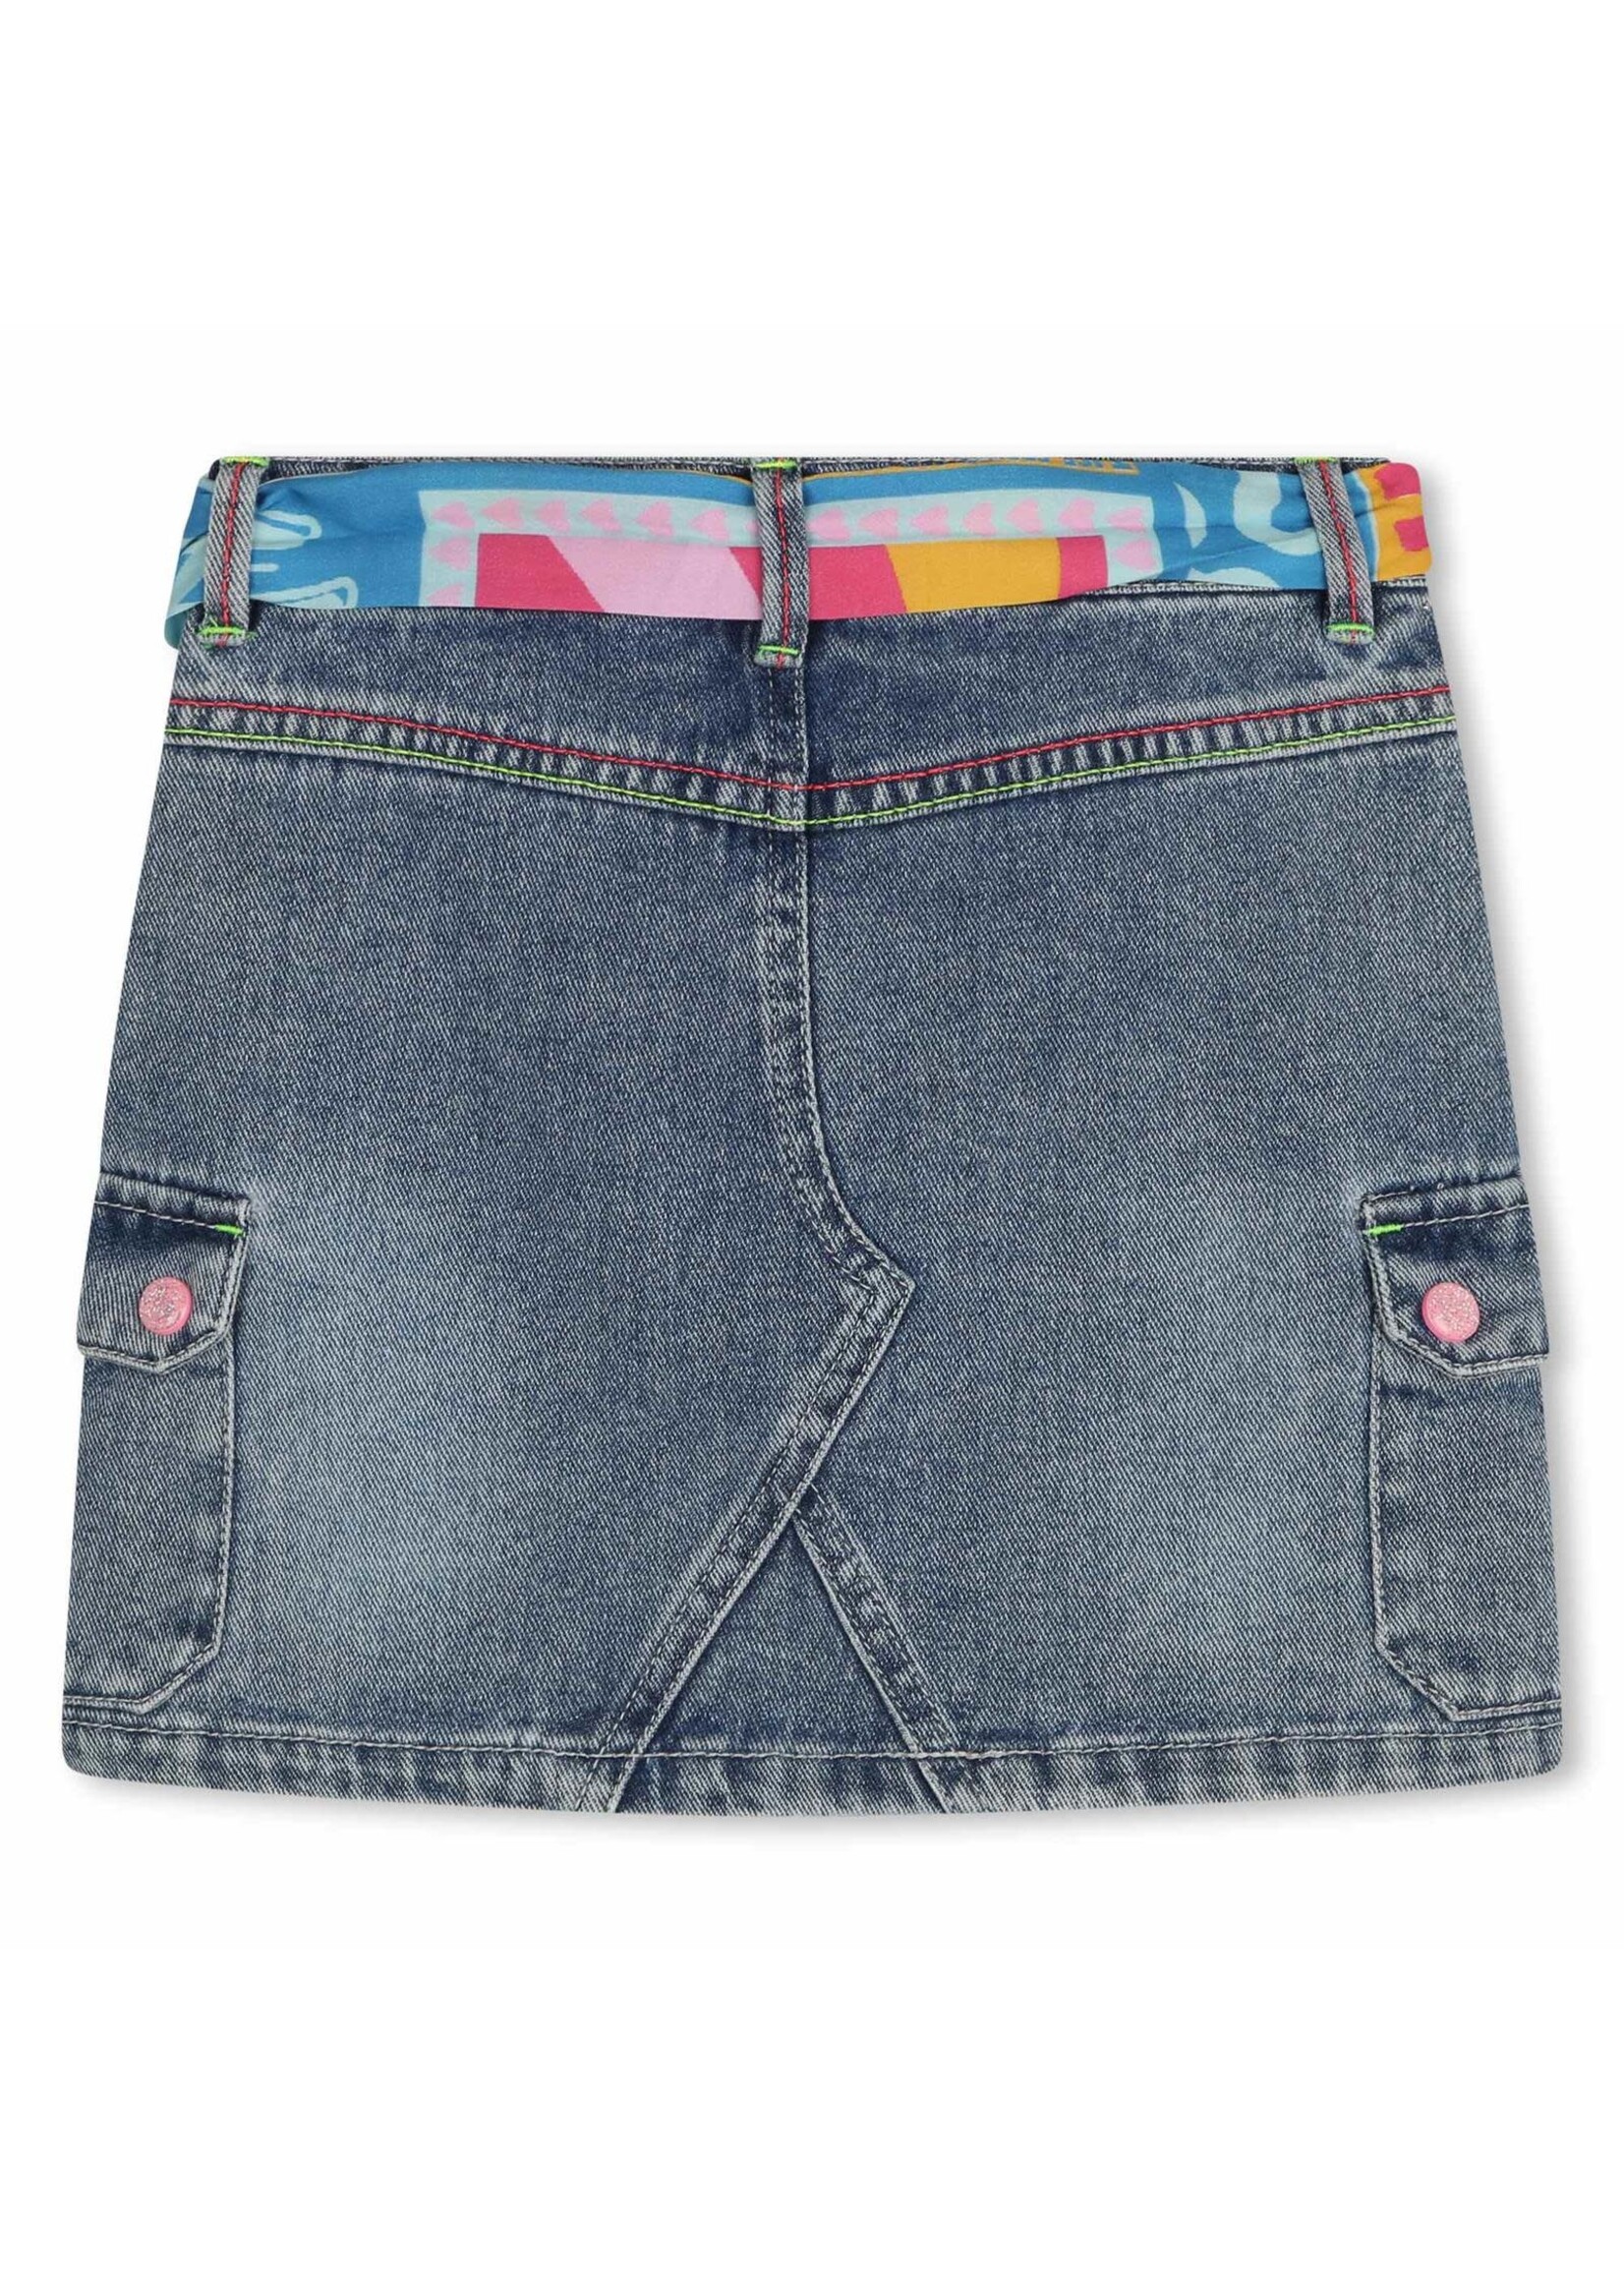 Billie Blush Jeans Skirt - Billie Blush